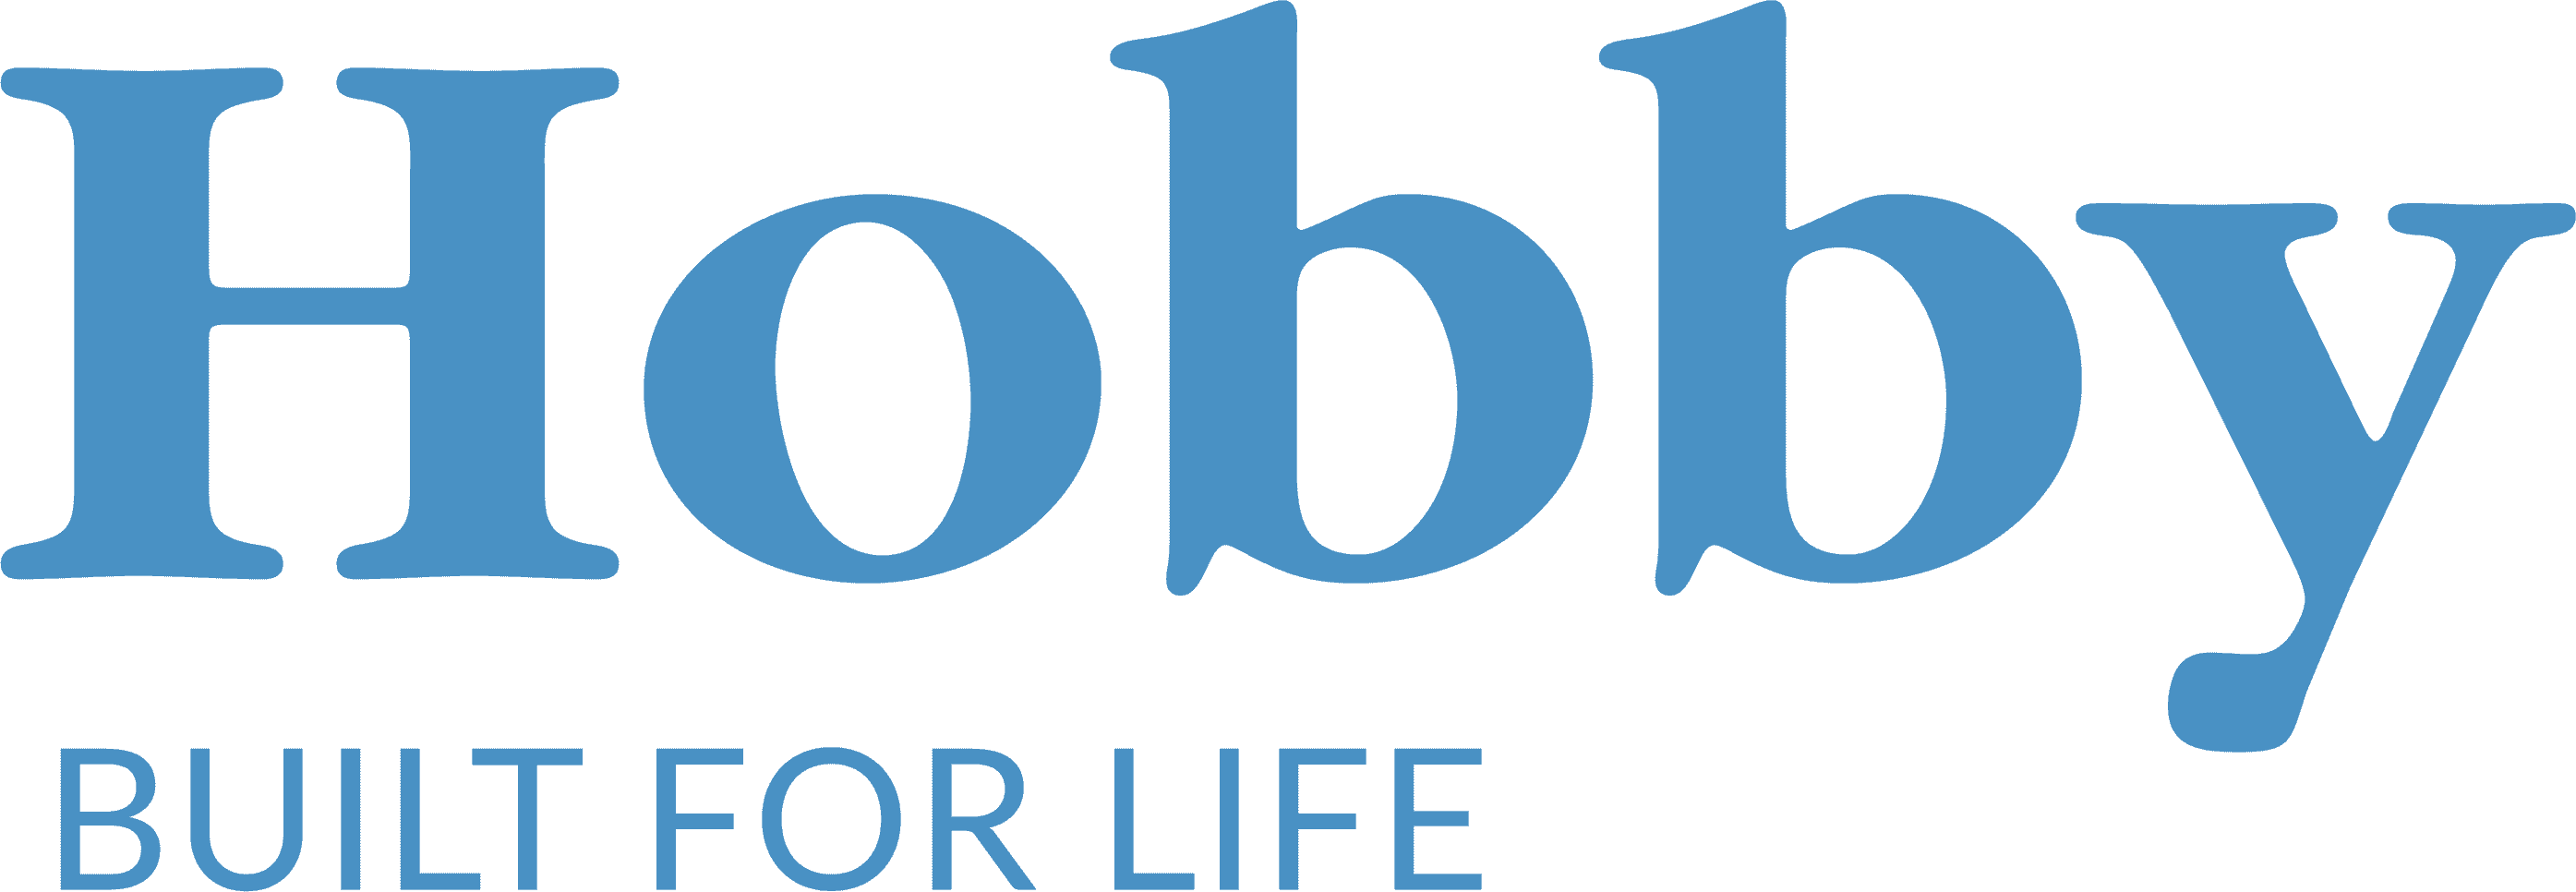 hobby logo